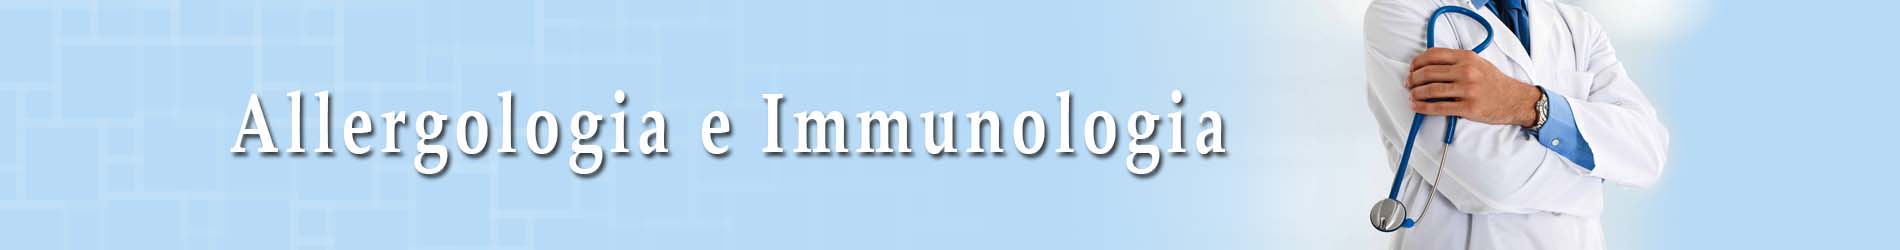 Allergologia Immunologia